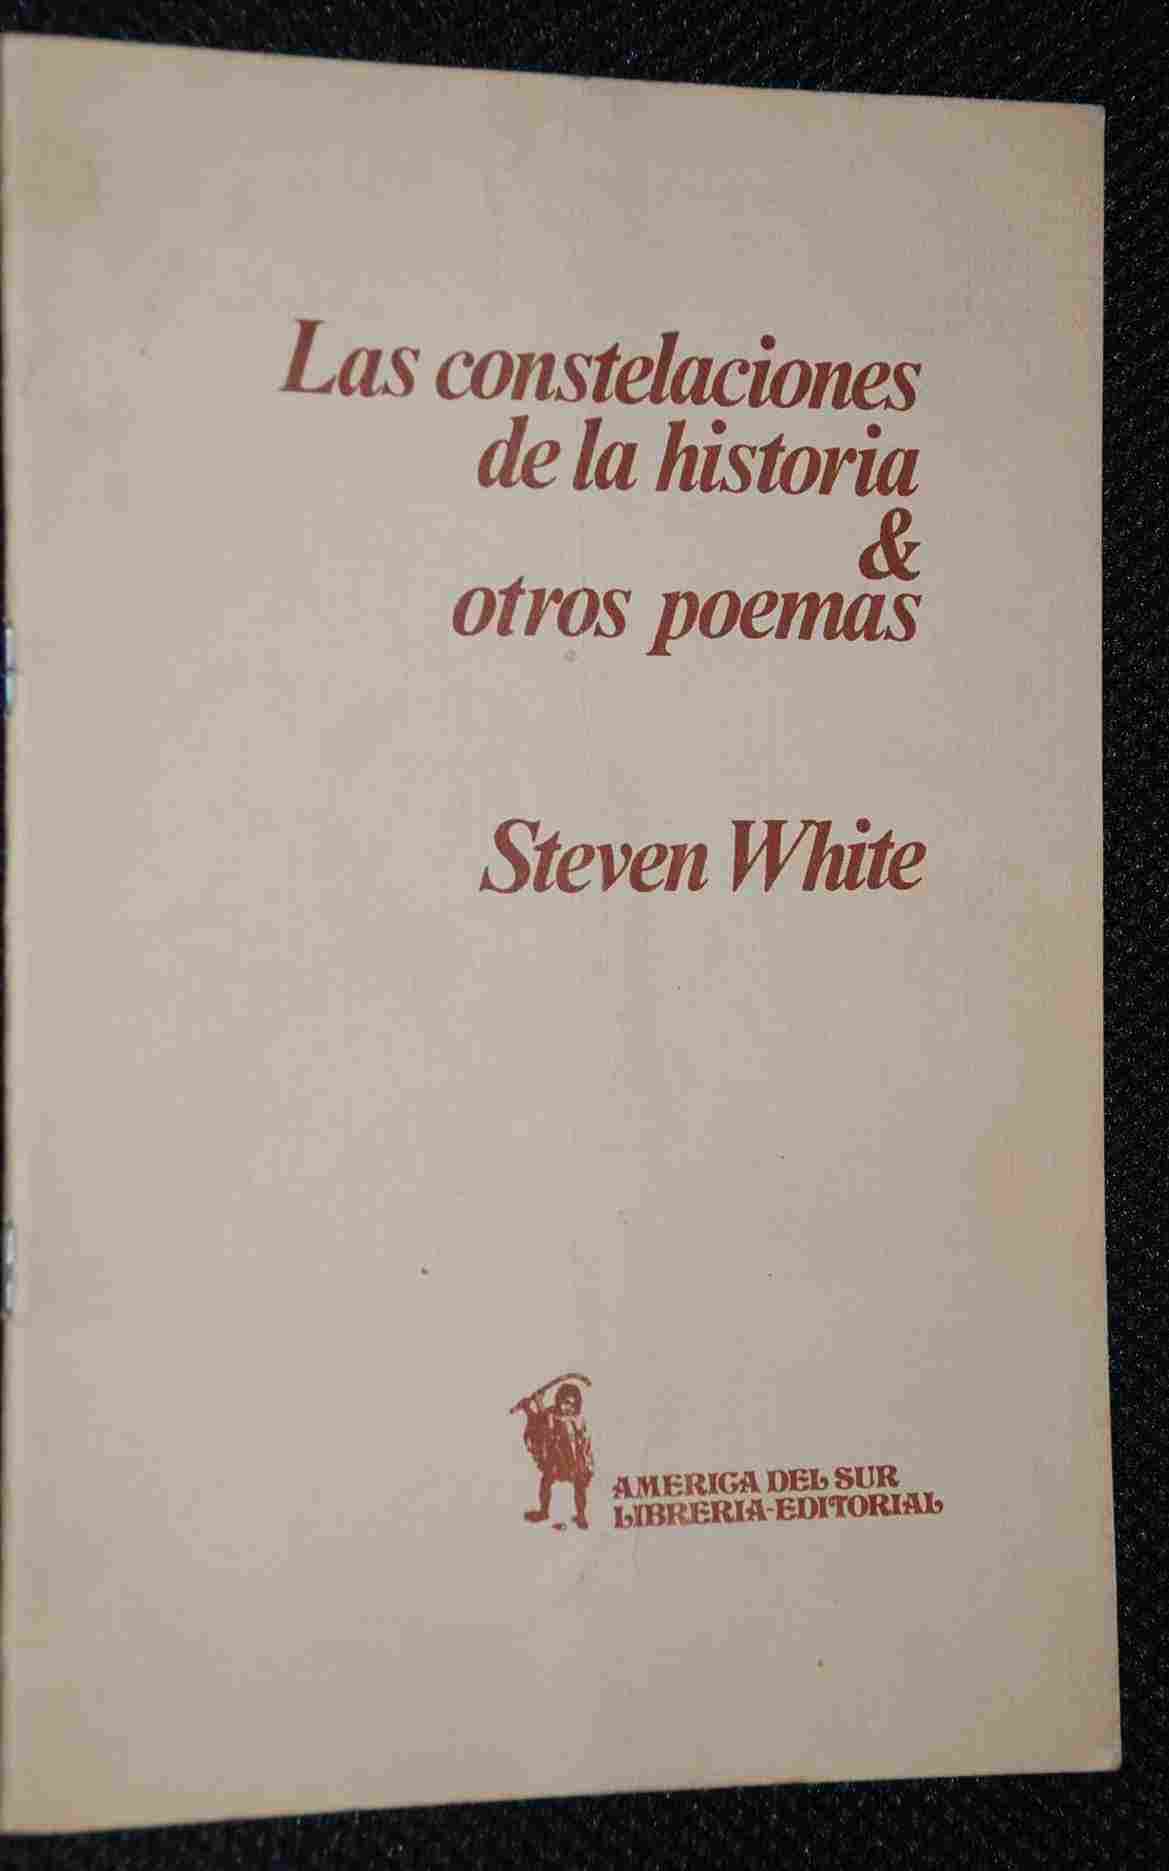 Steven White - Las constelaciones de la historia & otros poemas